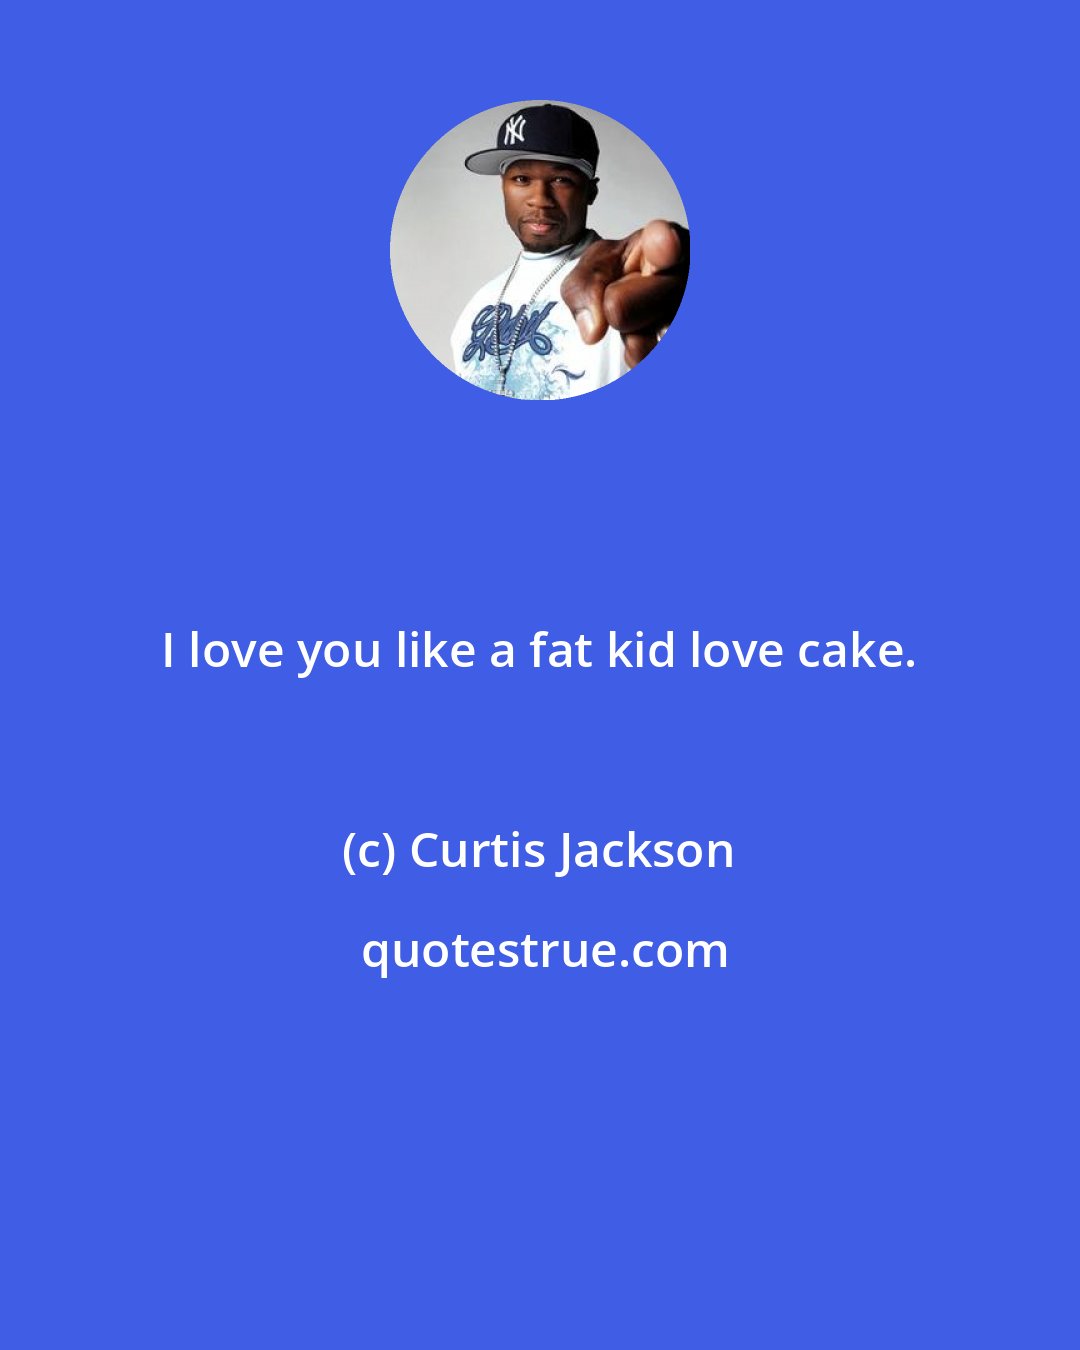 Curtis Jackson: I love you like a fat kid love cake.